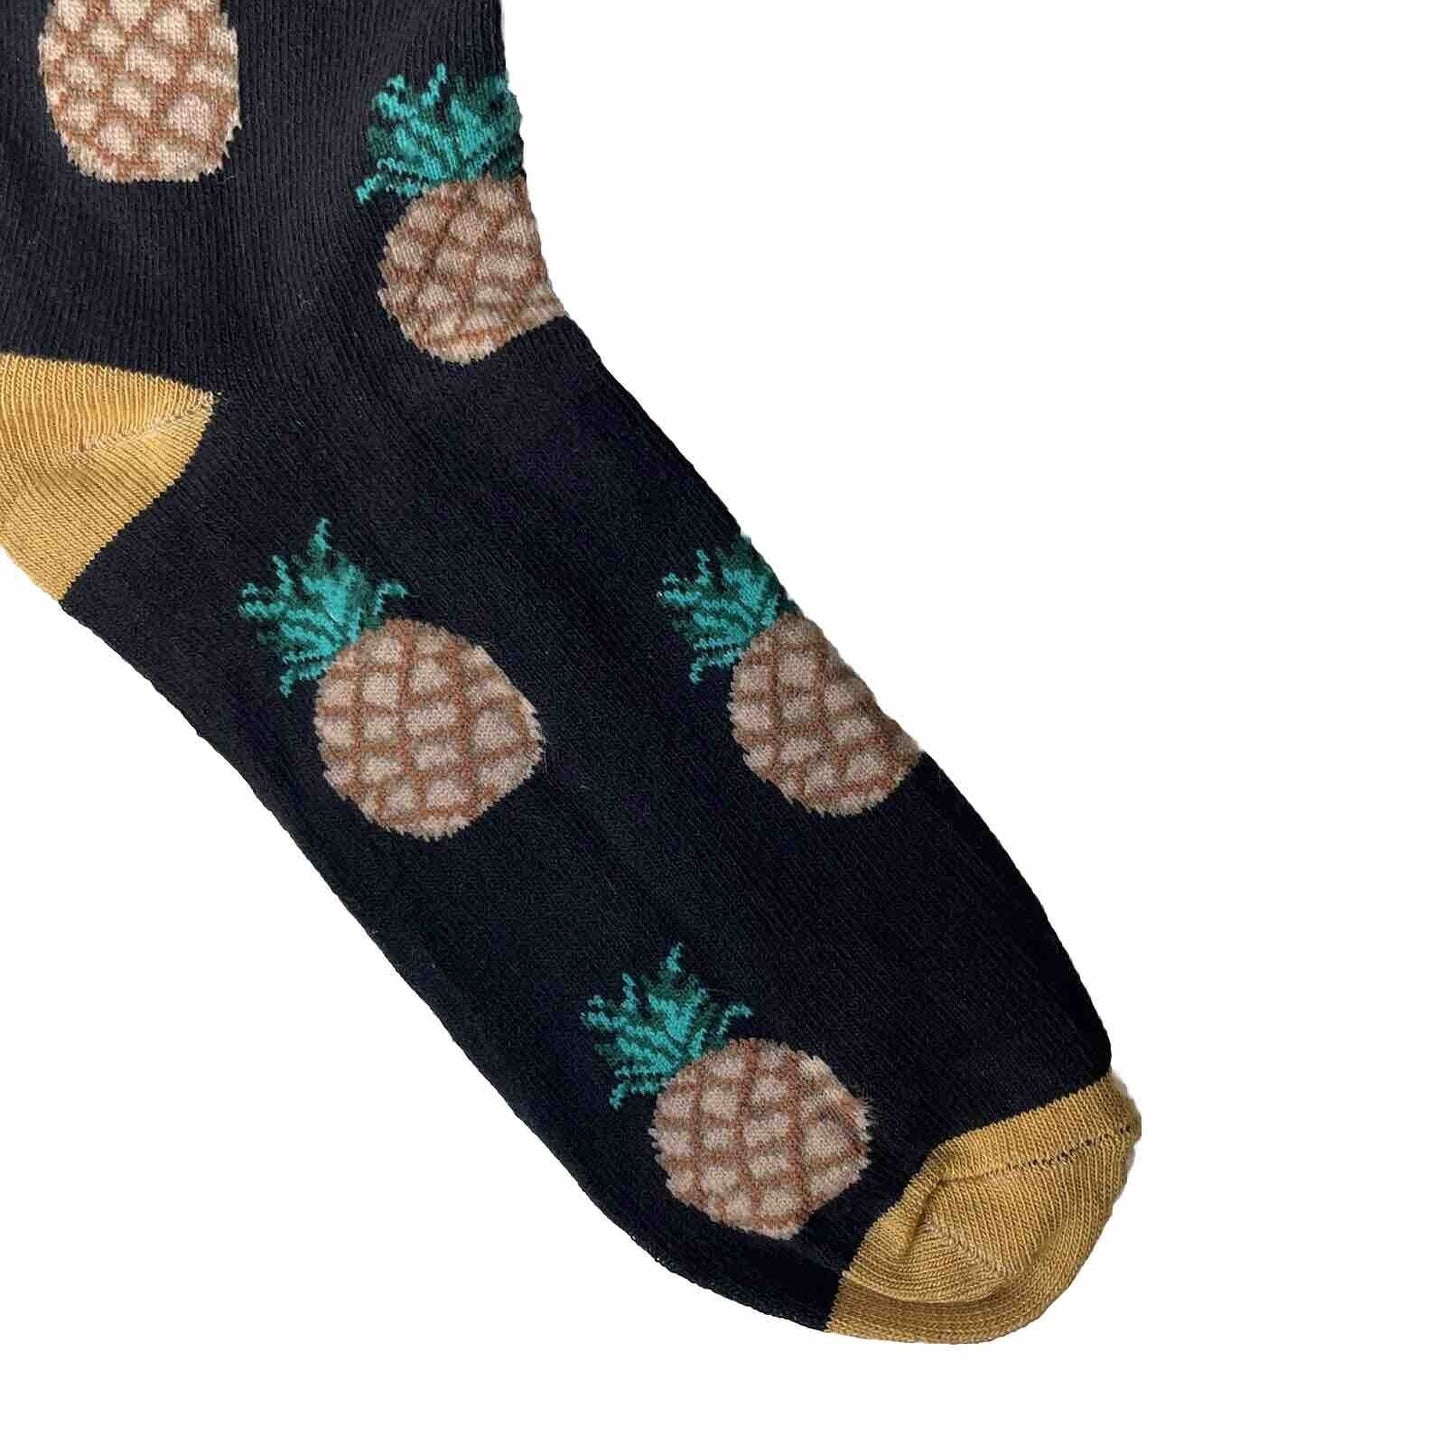 Novelty Socks Pineapple Bottom